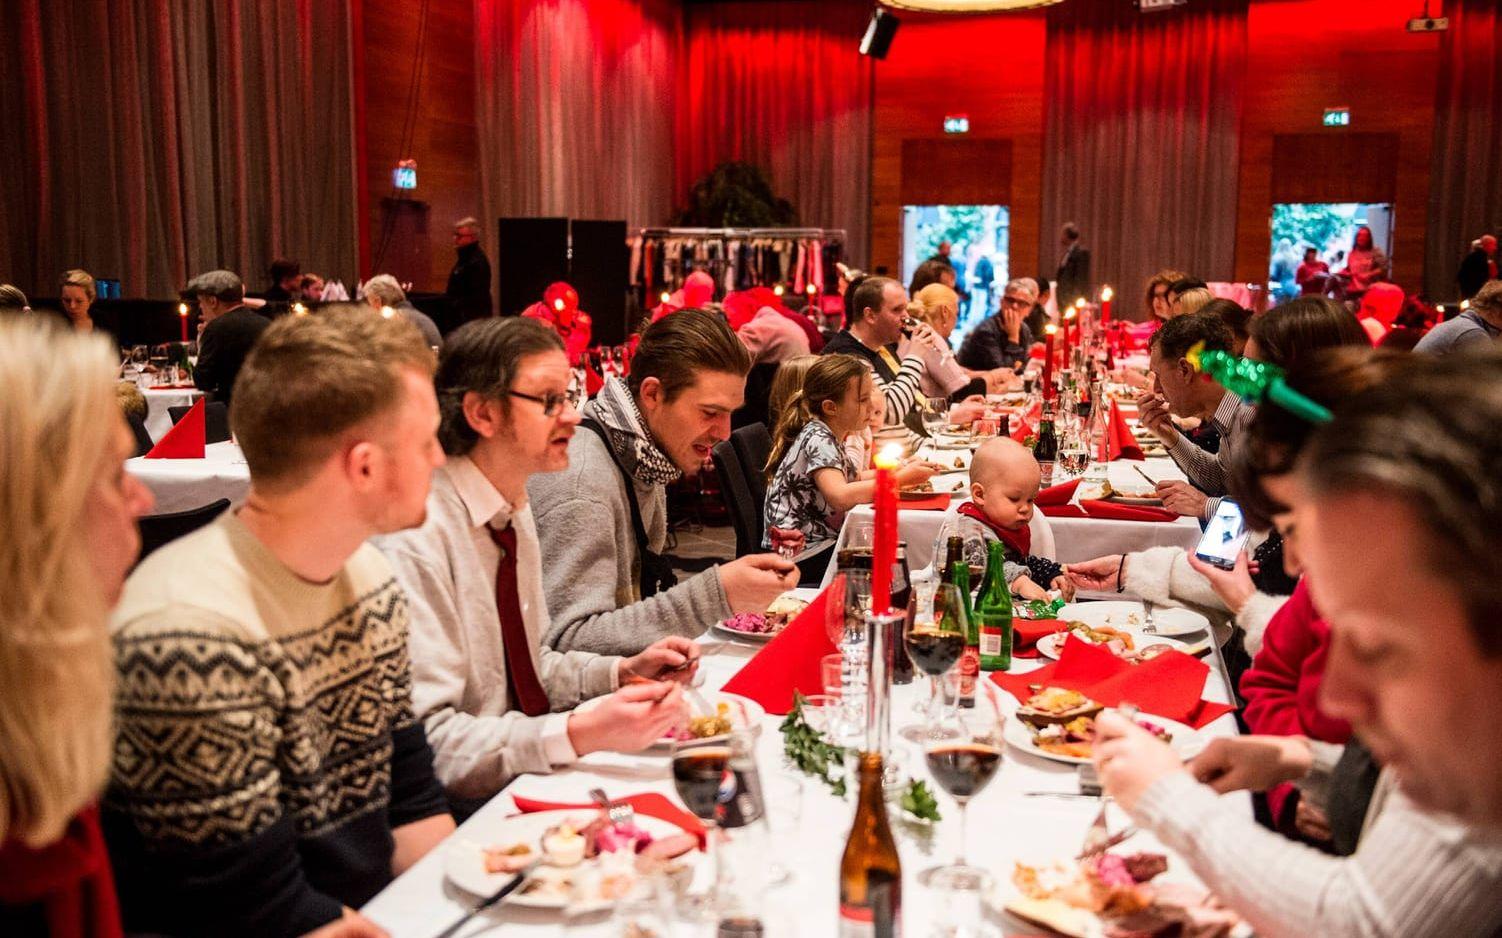 Sofia Karlsson, Daniel Lundström, Lars Karlsson och Jonatan Skatt njöt av maten tillsammans. Även faktums VD Peter Kronvall, som skymtar i bilden, satt vid bordet och åt.